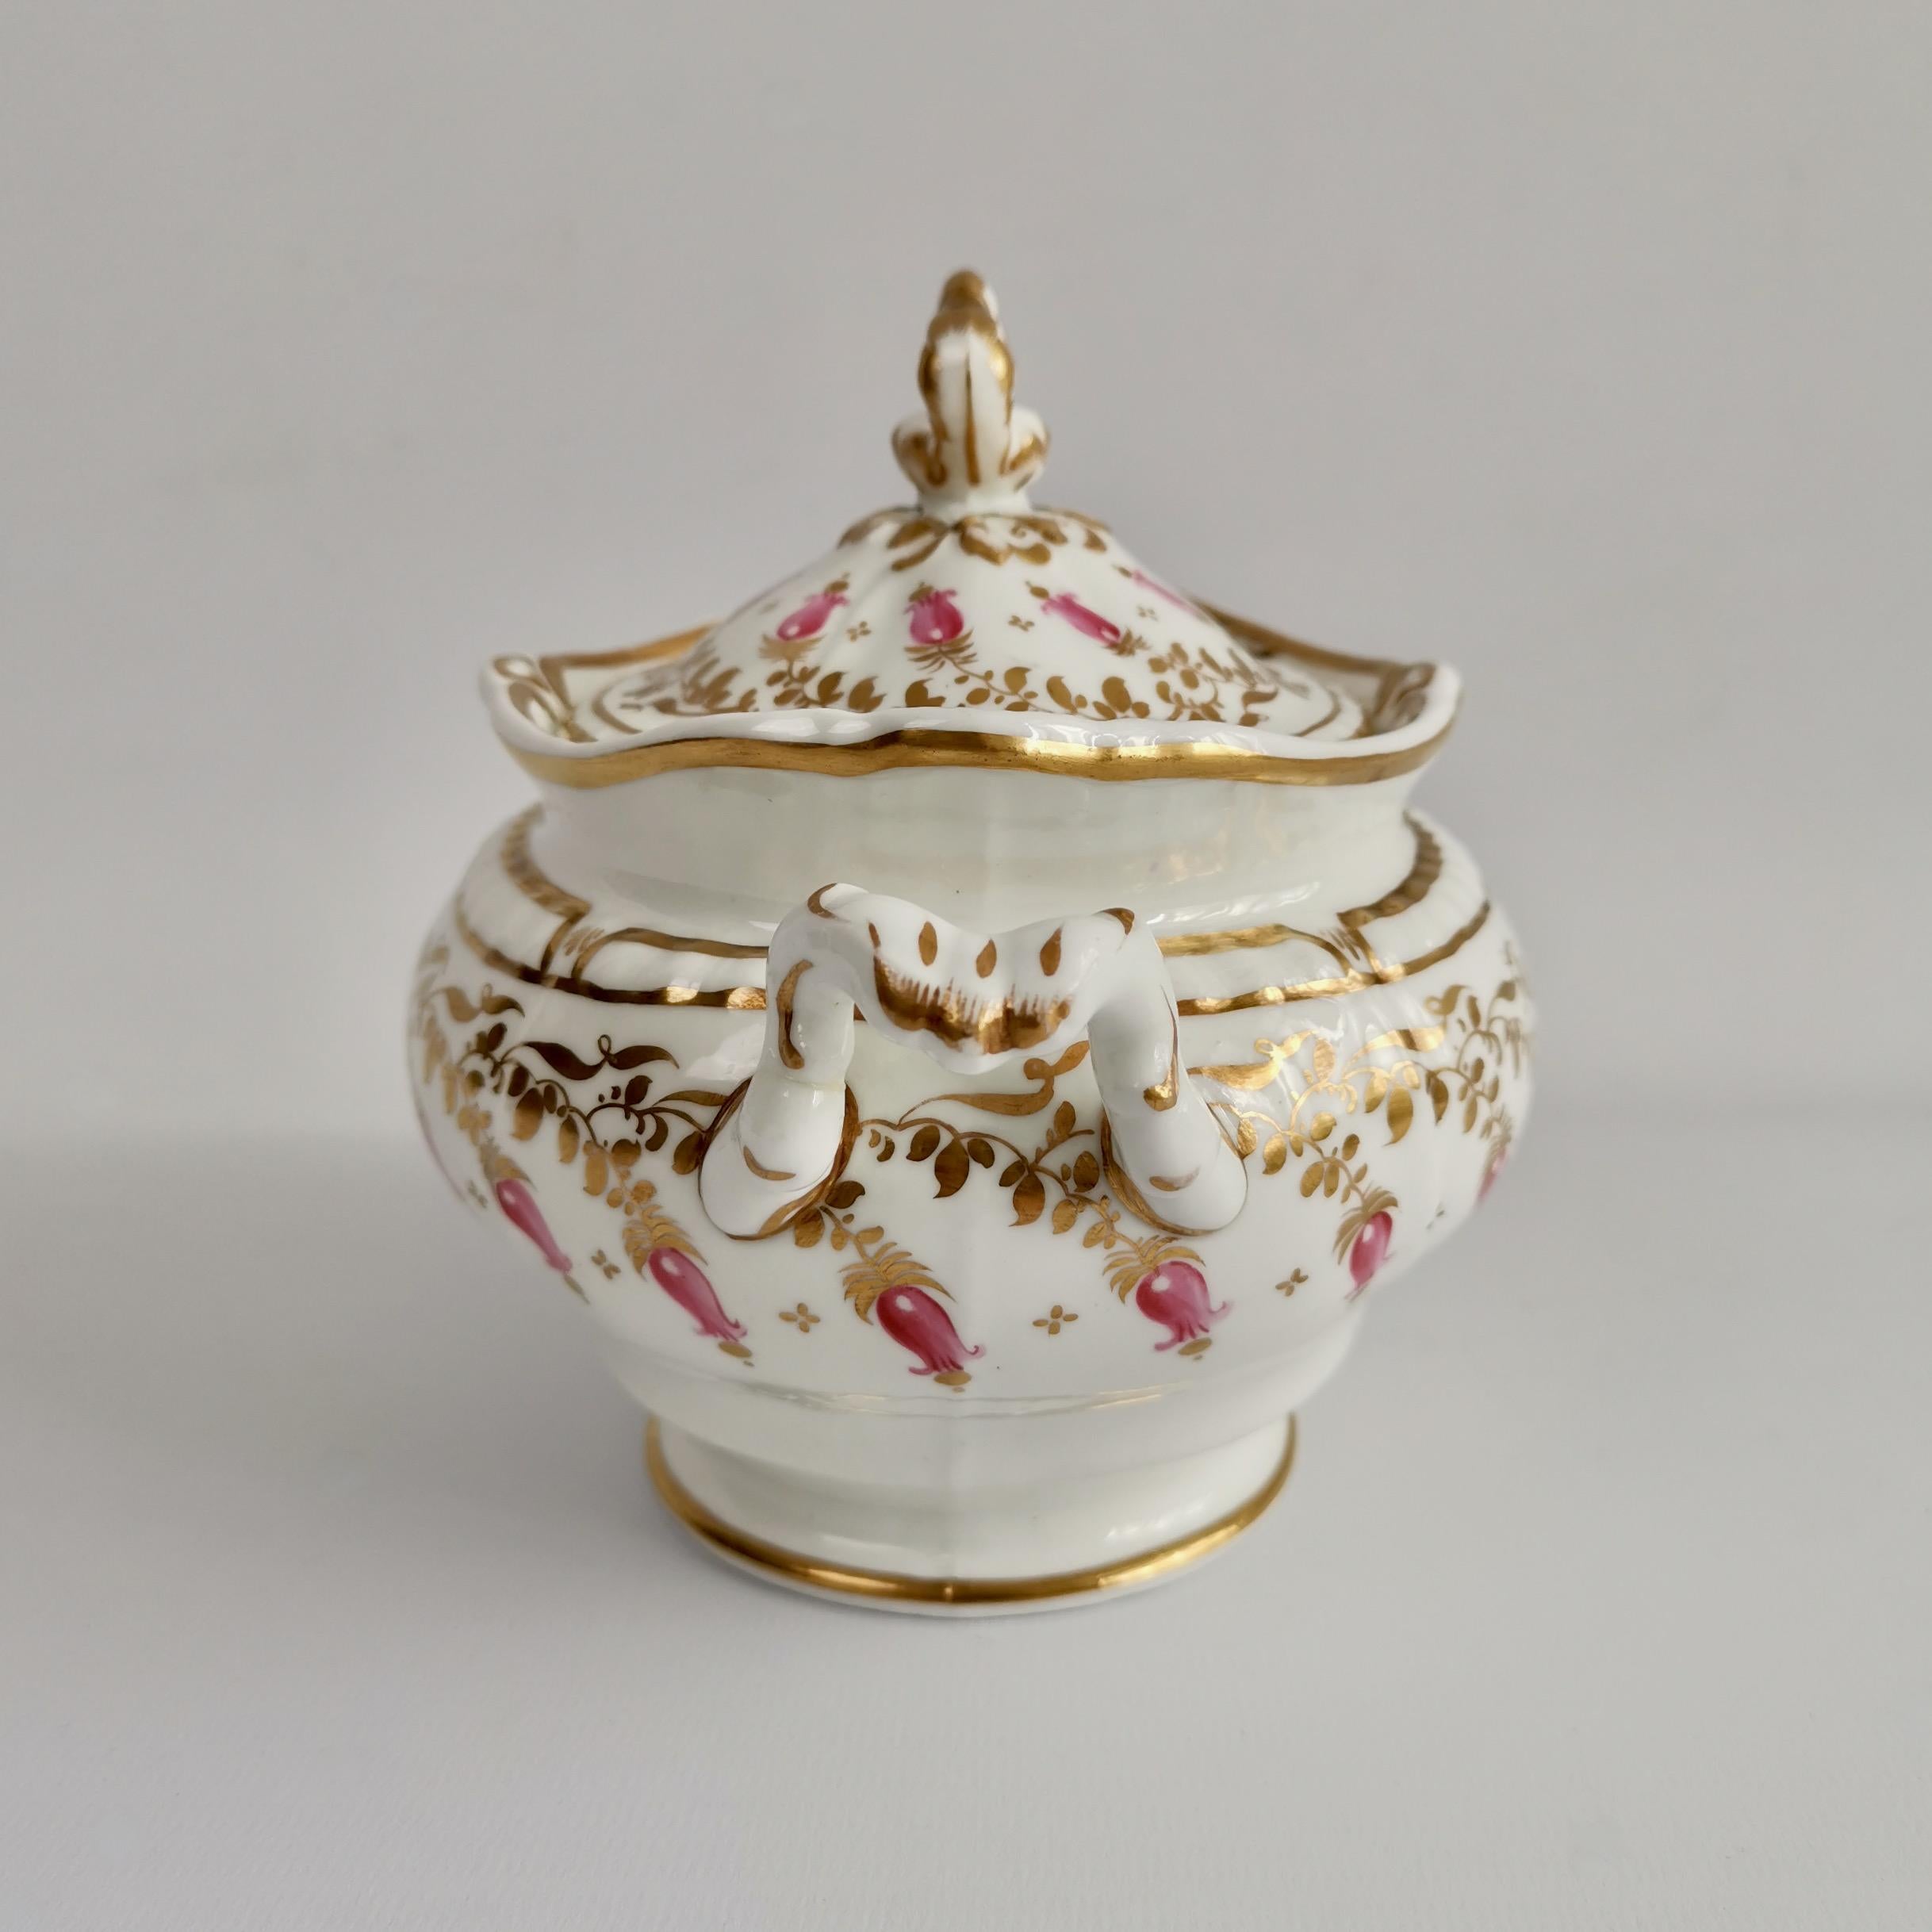 Rococo Revival Spode Felspar Porcelain Sucrier, White, Gilt and Pink Harebells, circa 1828